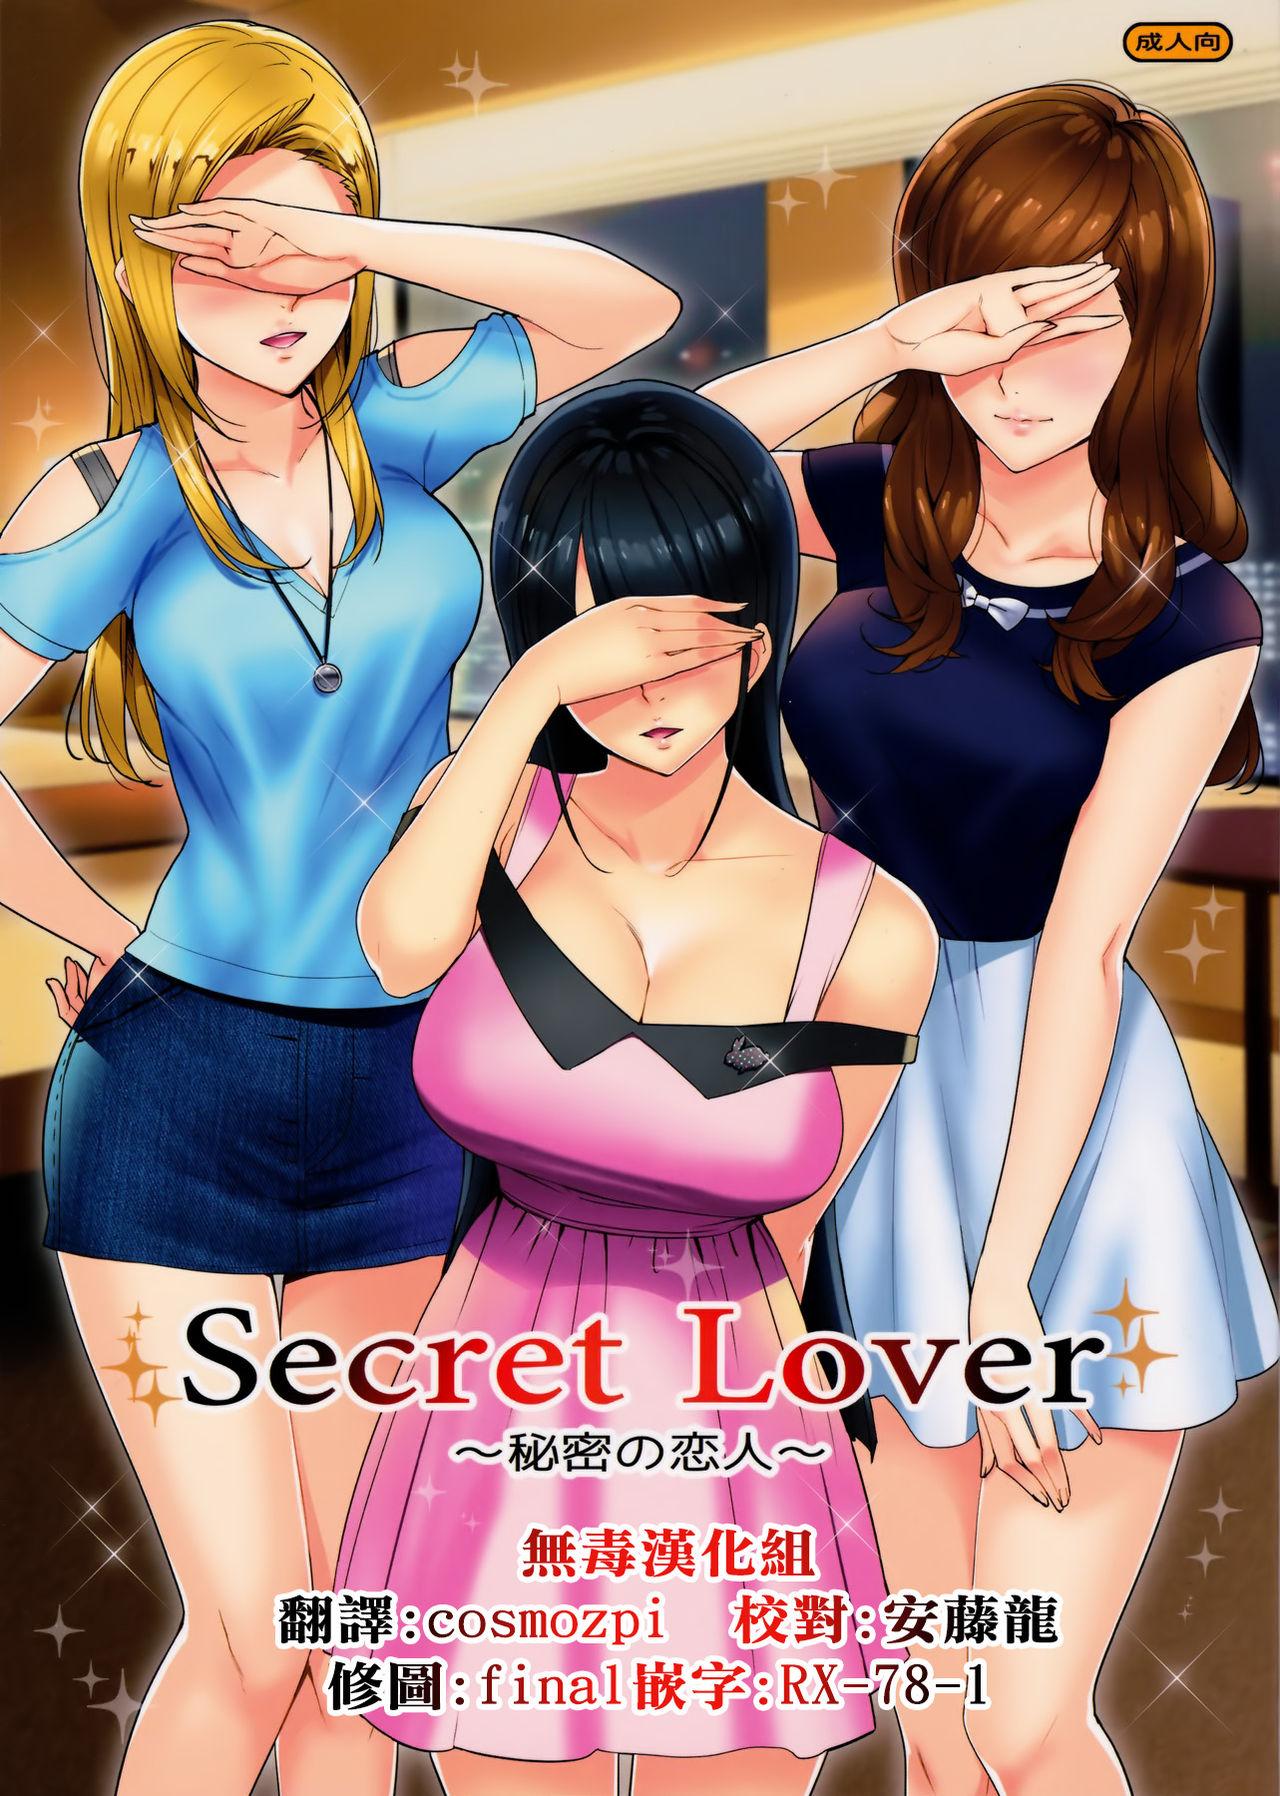 Secret Lover 0